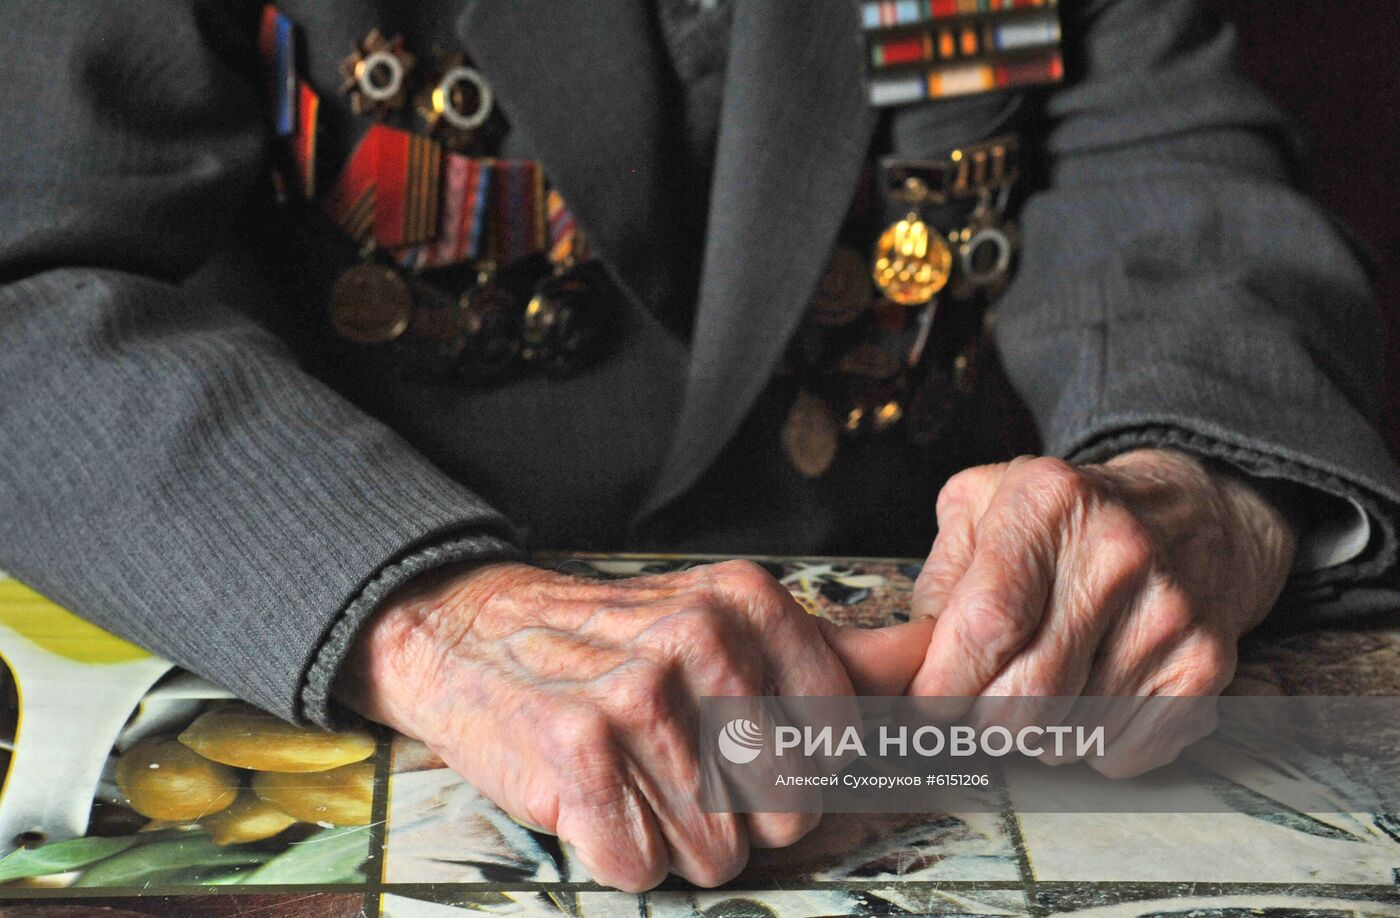 Ветеран Великой Отечественной войны М. П. Скобеев